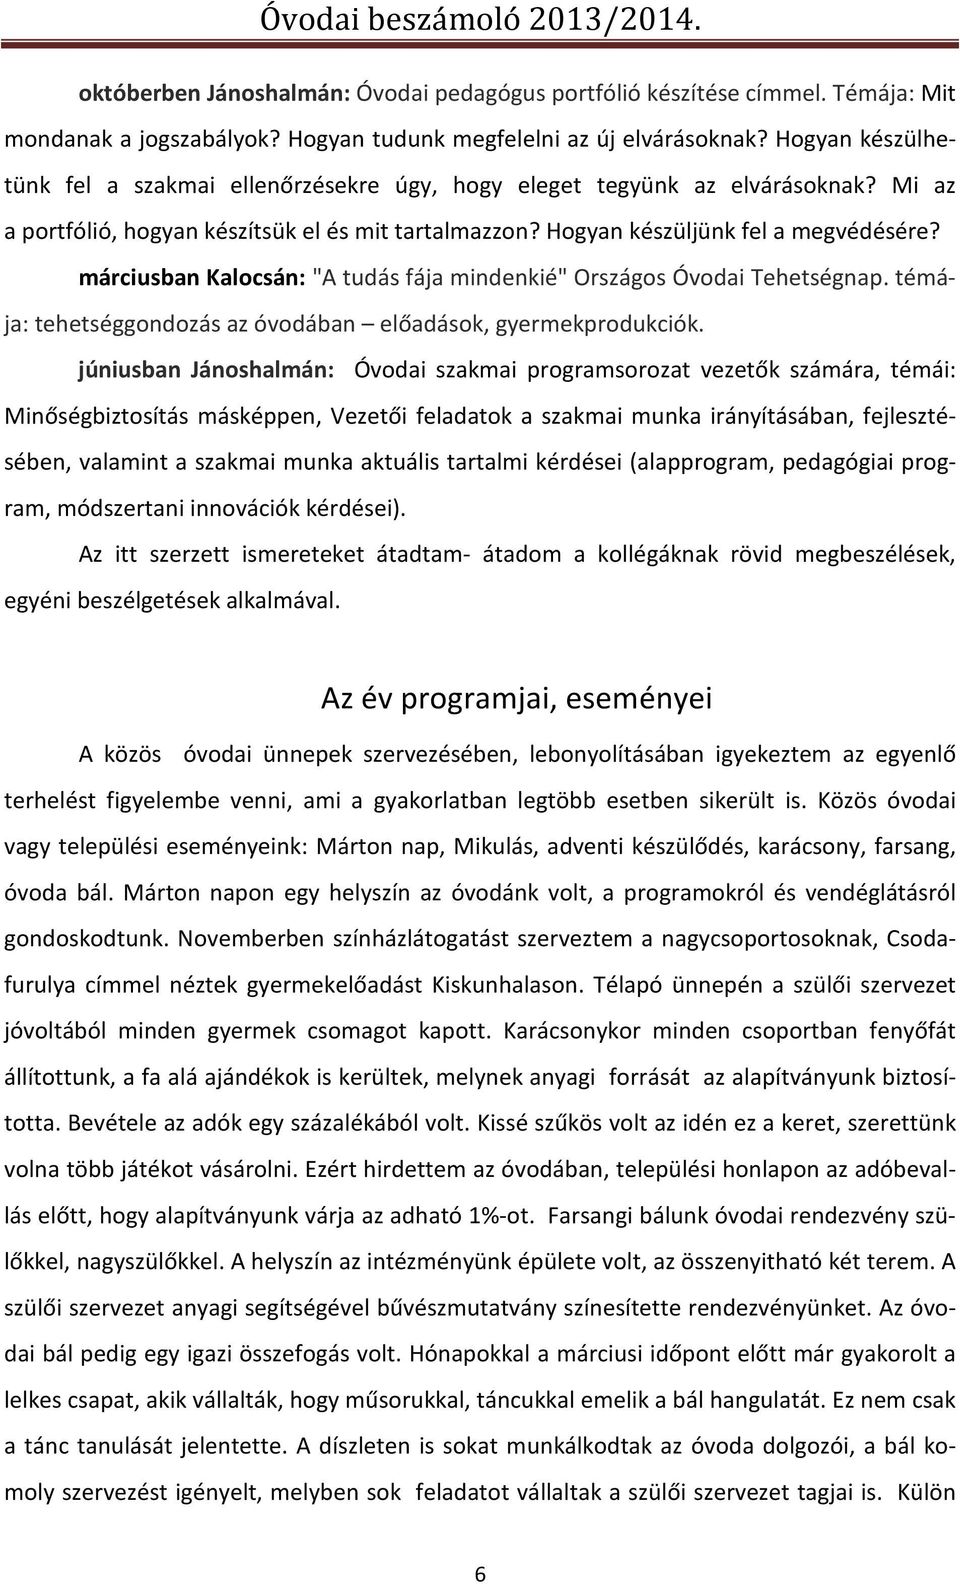 márciusban Kalocsán: "A tudás fája mindenkié" Országos Óvodai Tehetségnap. témája: tehetséggondozás az óvodában előadások, gyermekprodukciók.